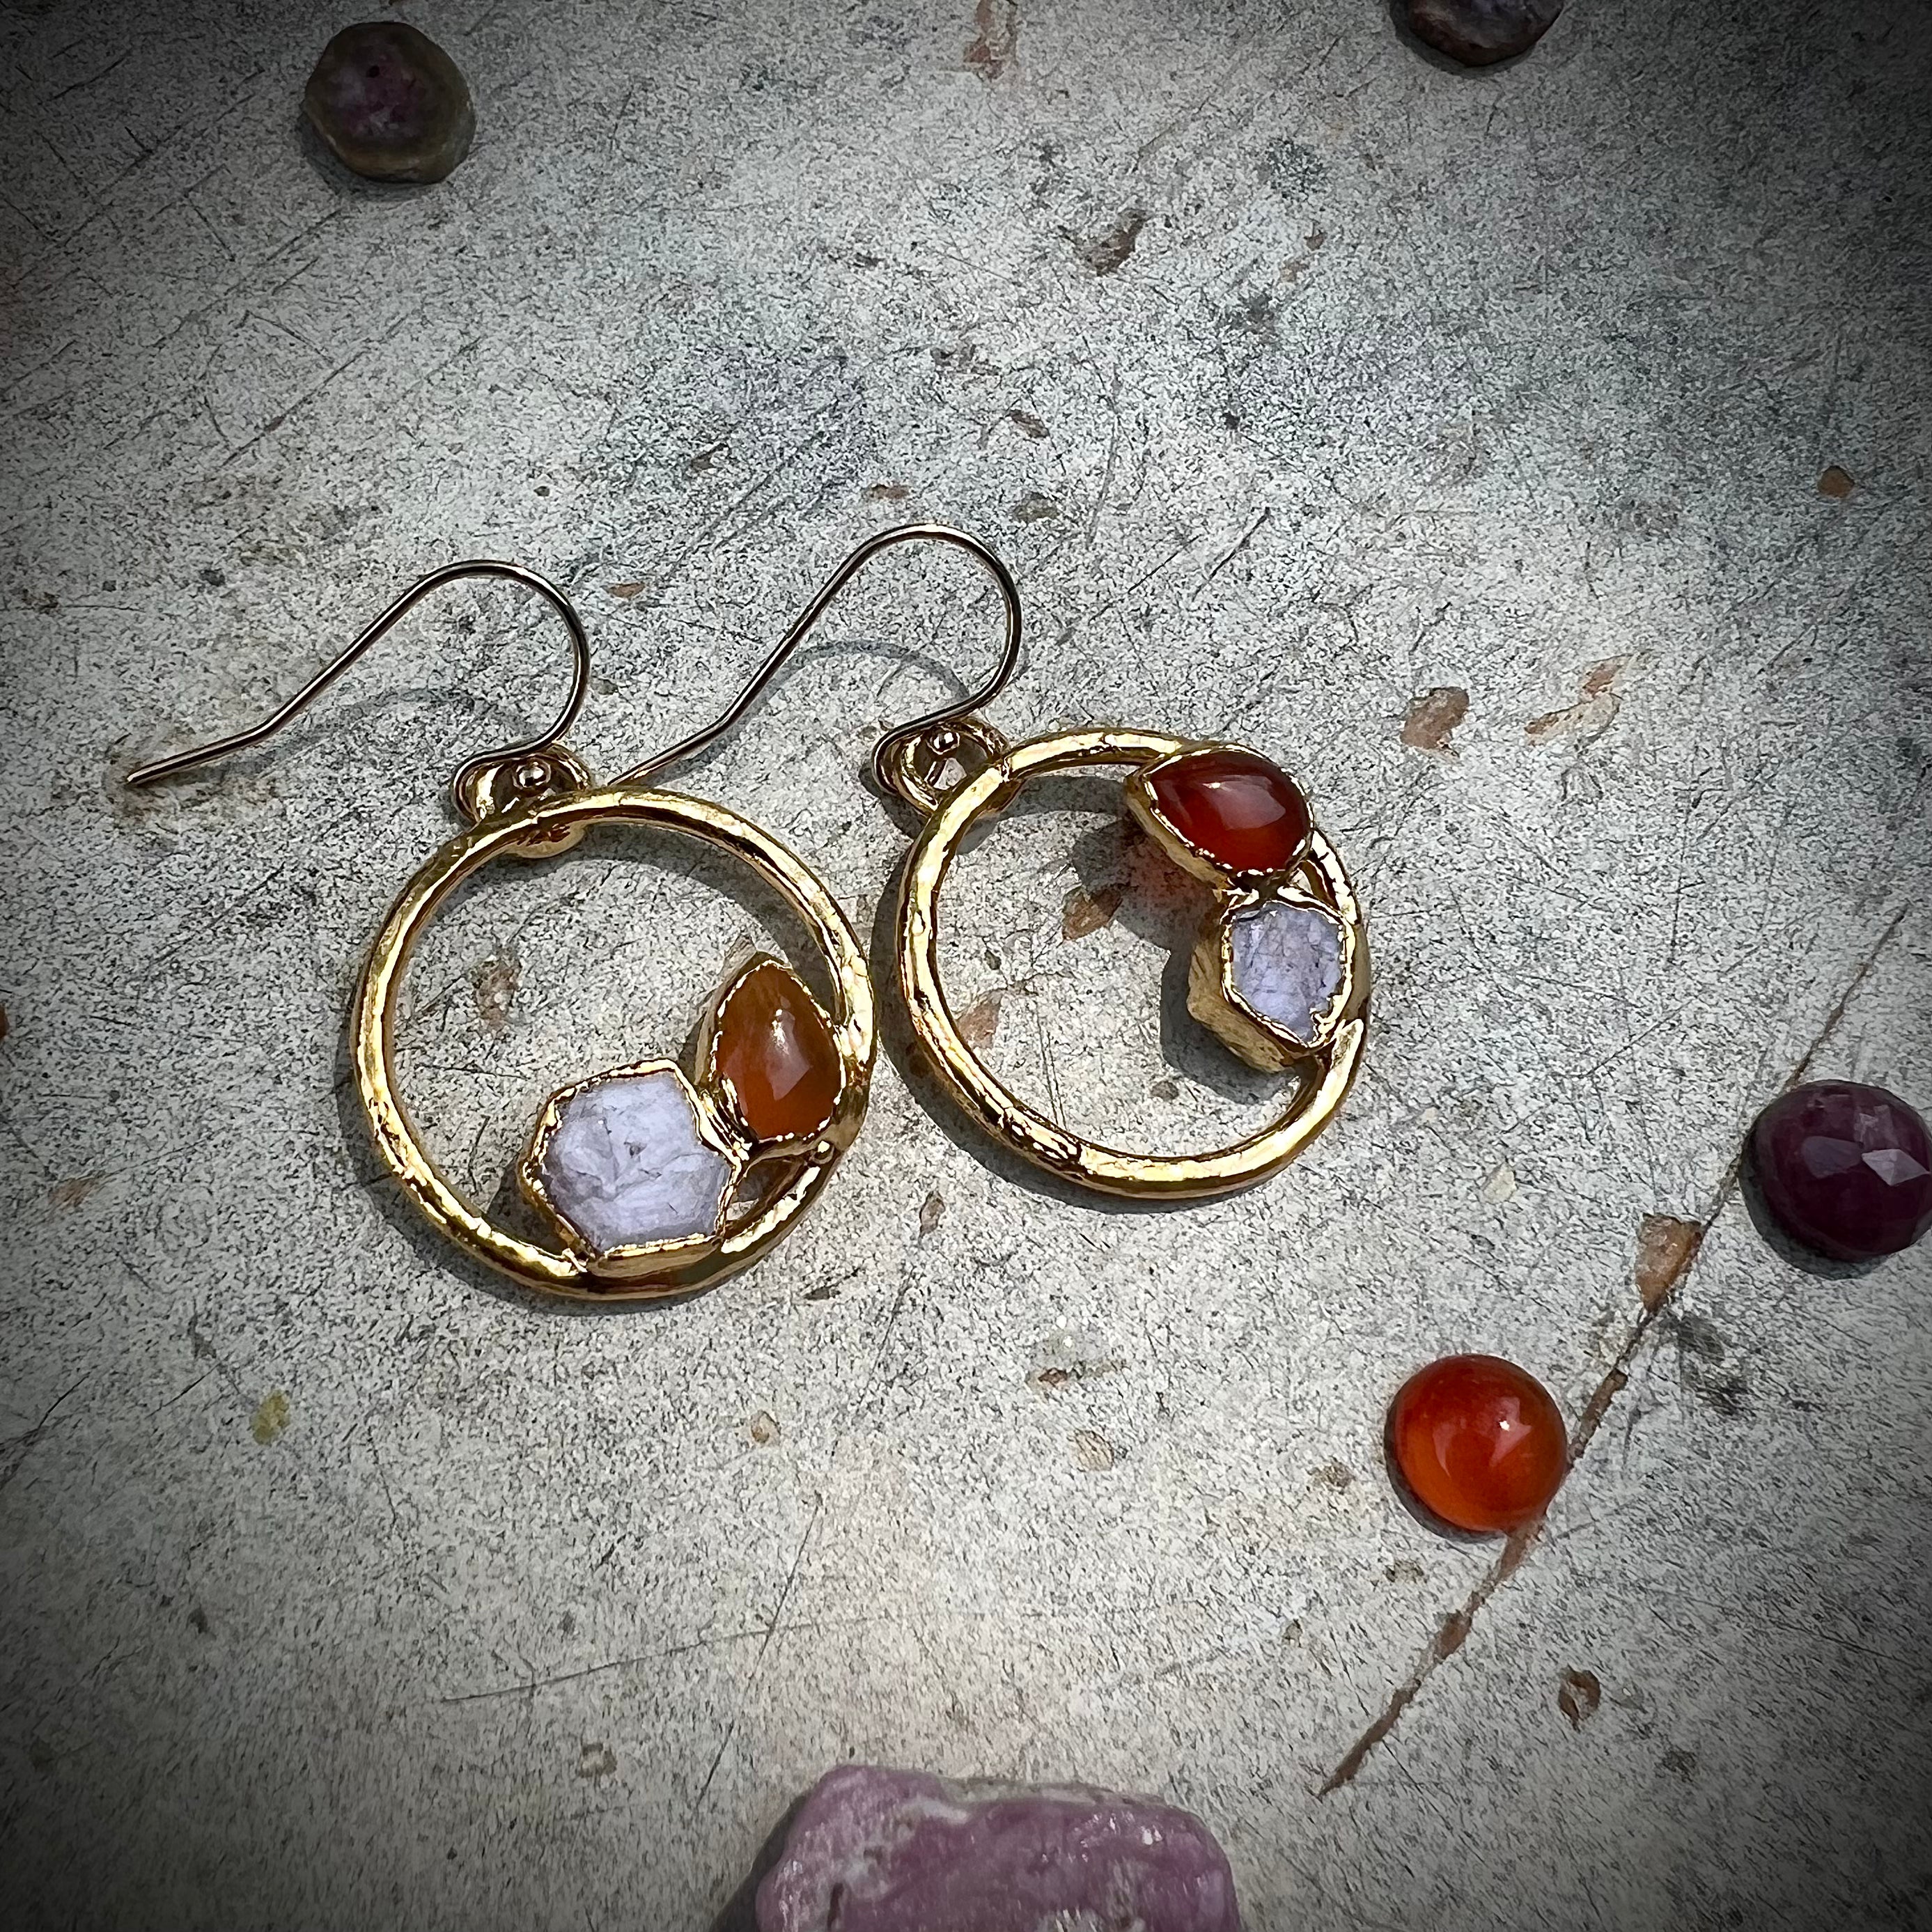 Carnelian + Star Ruby earrings